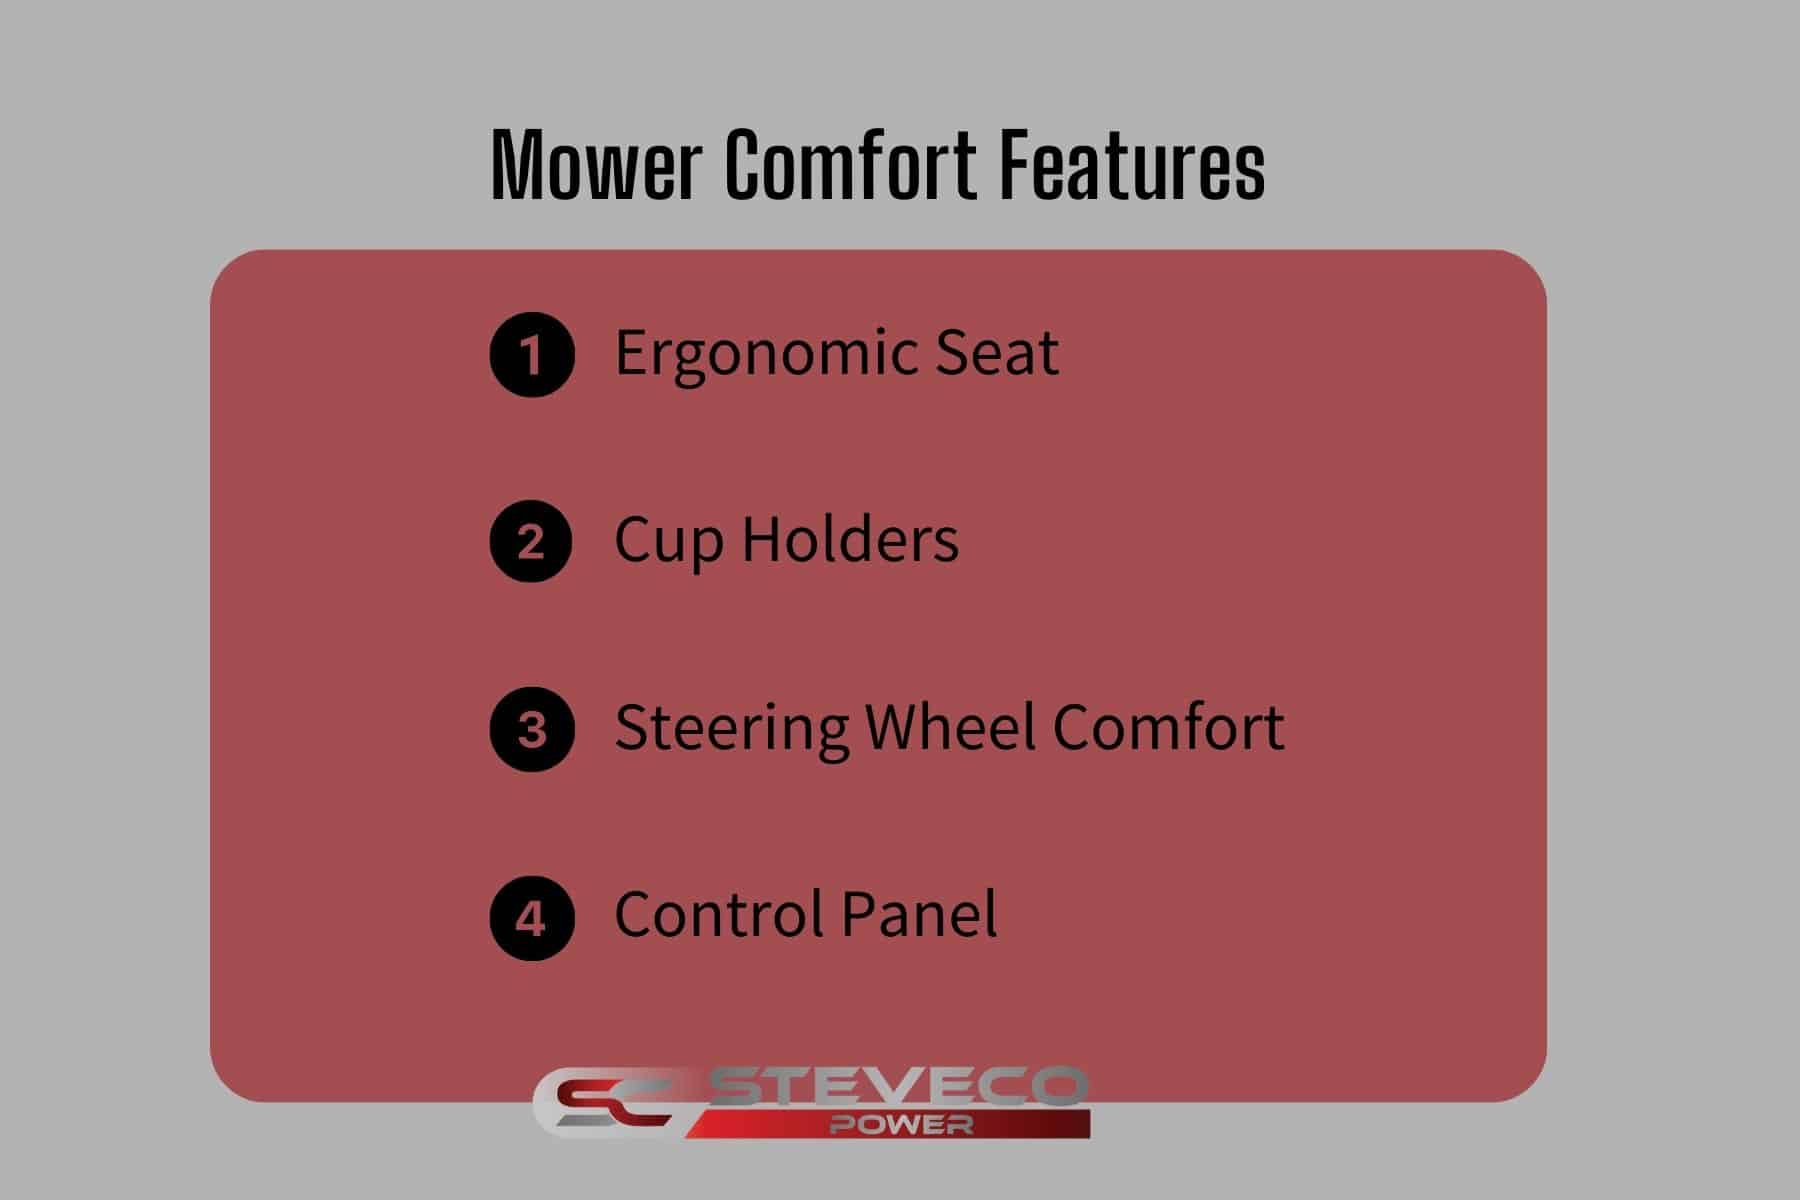 Mower Comfort Features